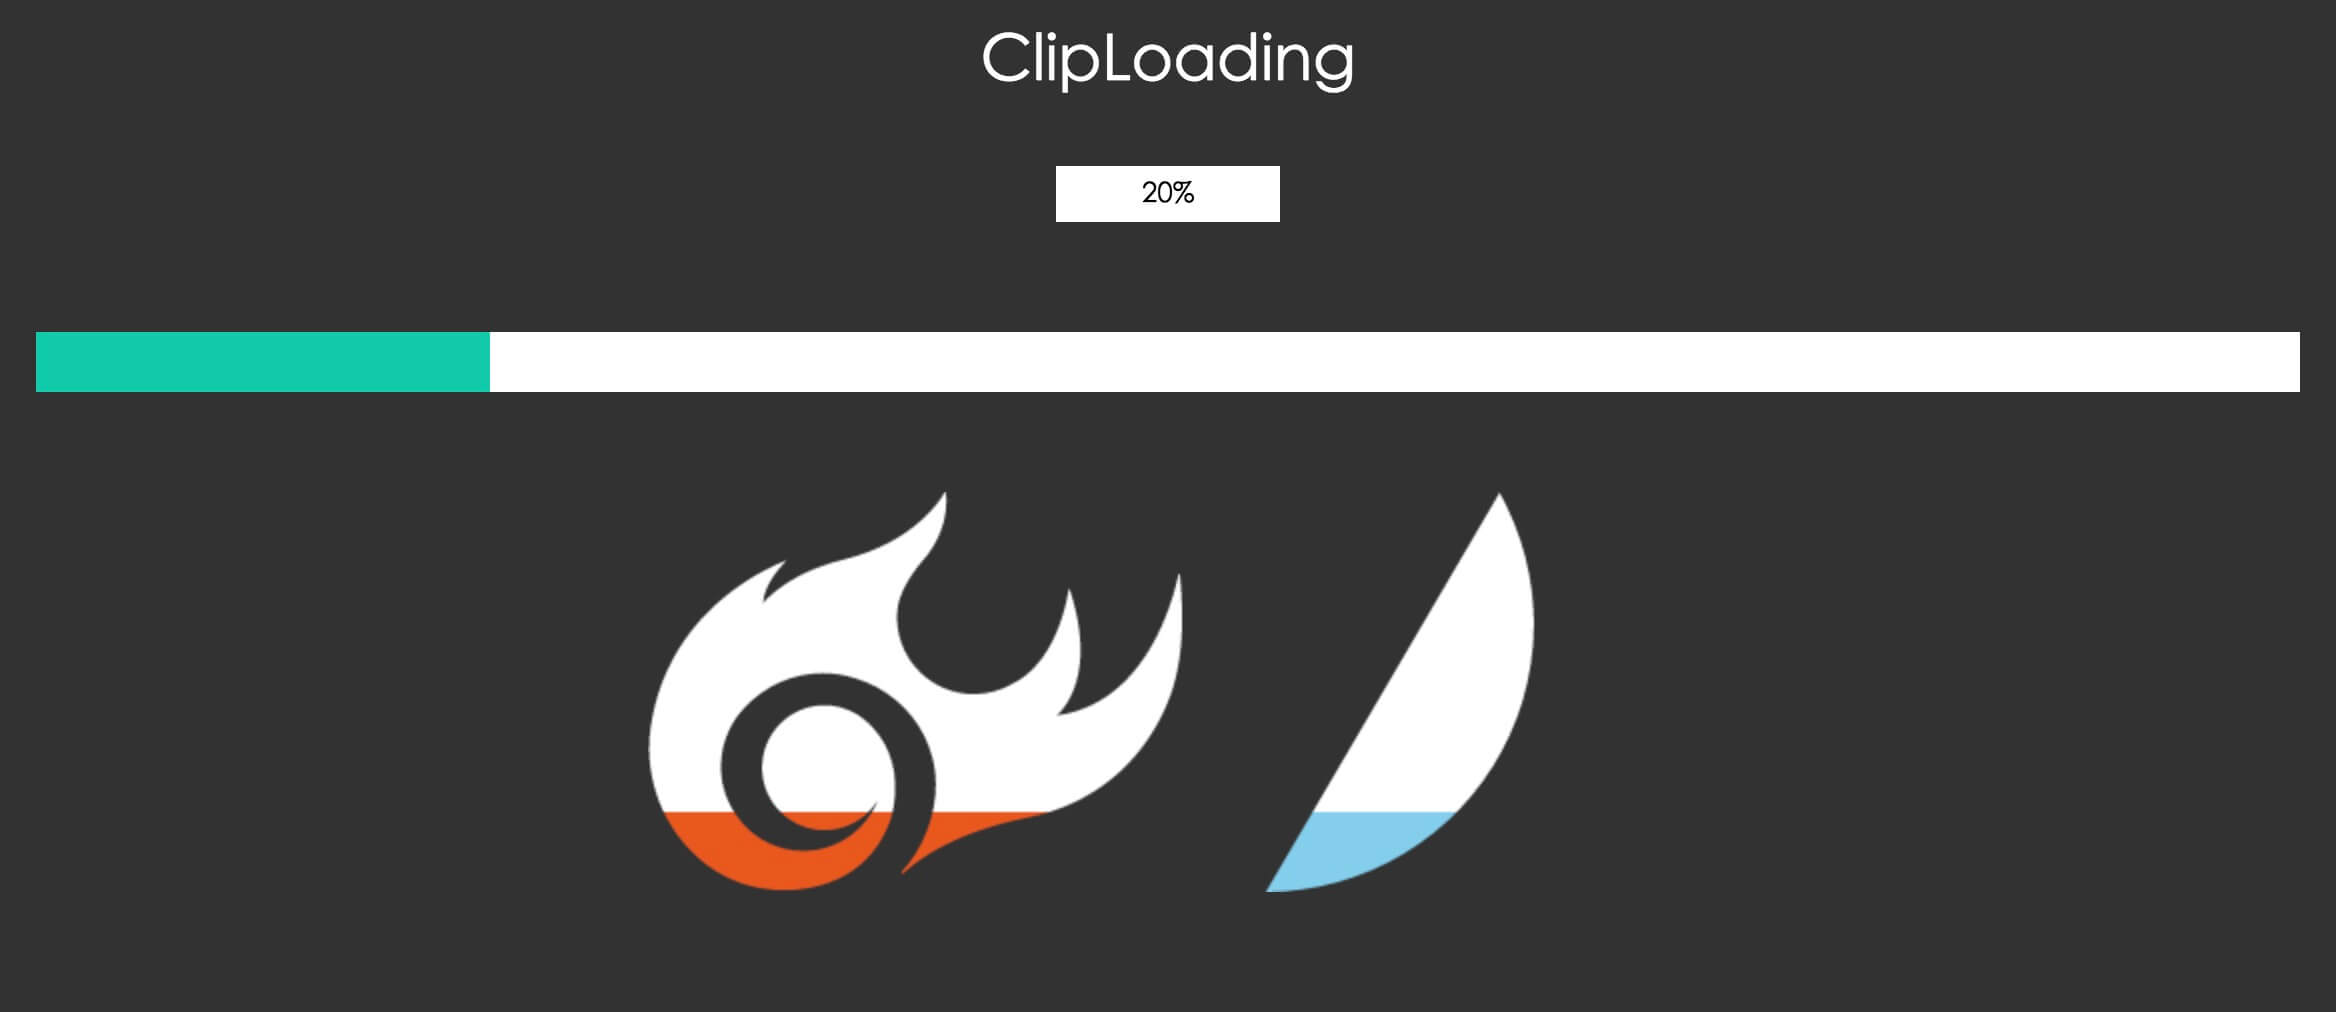 ClipLoading